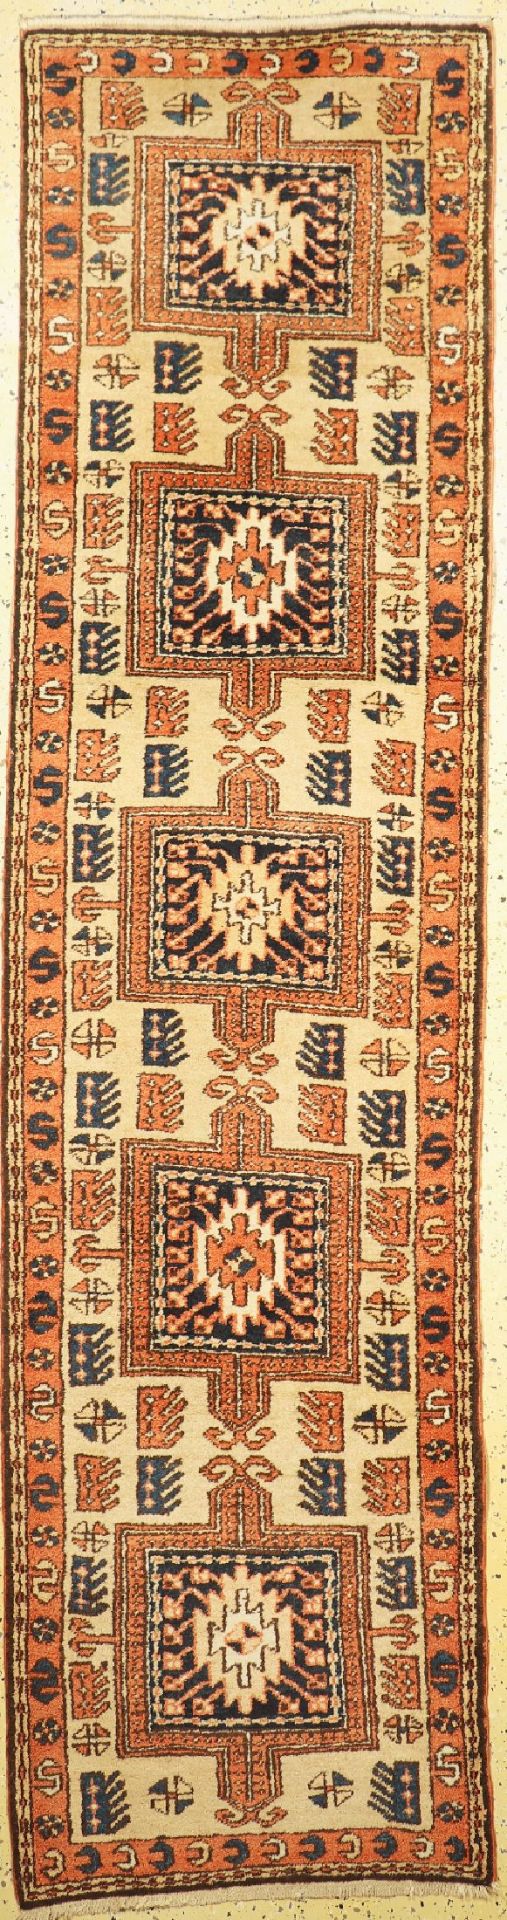 Meschgin, Persien, um 1960, Wolle auf Baumwolle, ca. 300